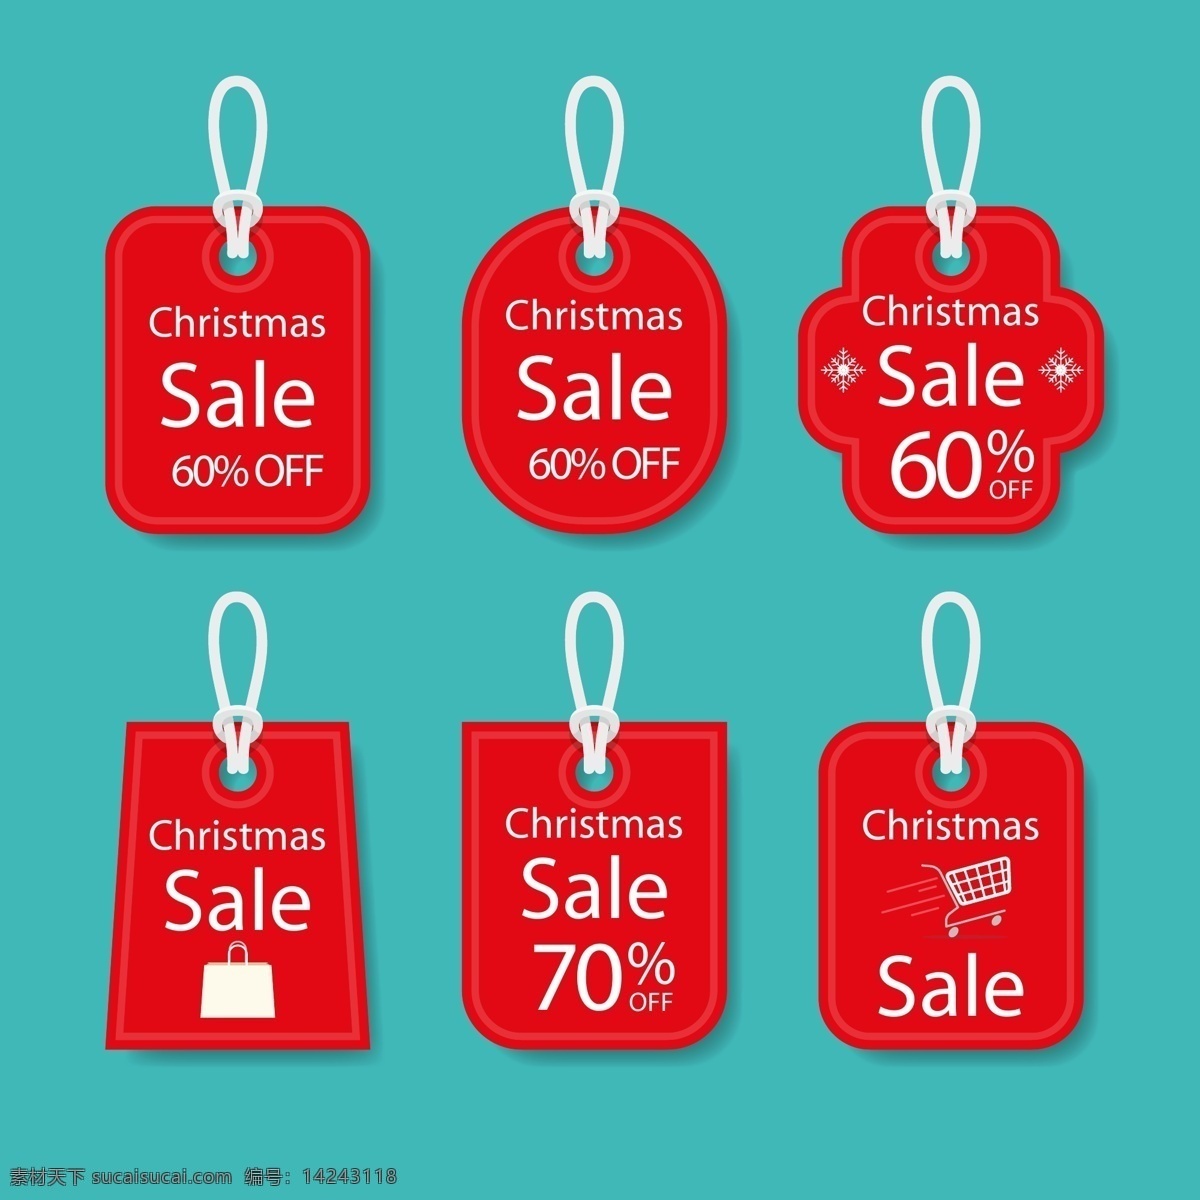 红色 圣诞节 英文 标签 促销 矢量素材 优惠 购物袋 购物车